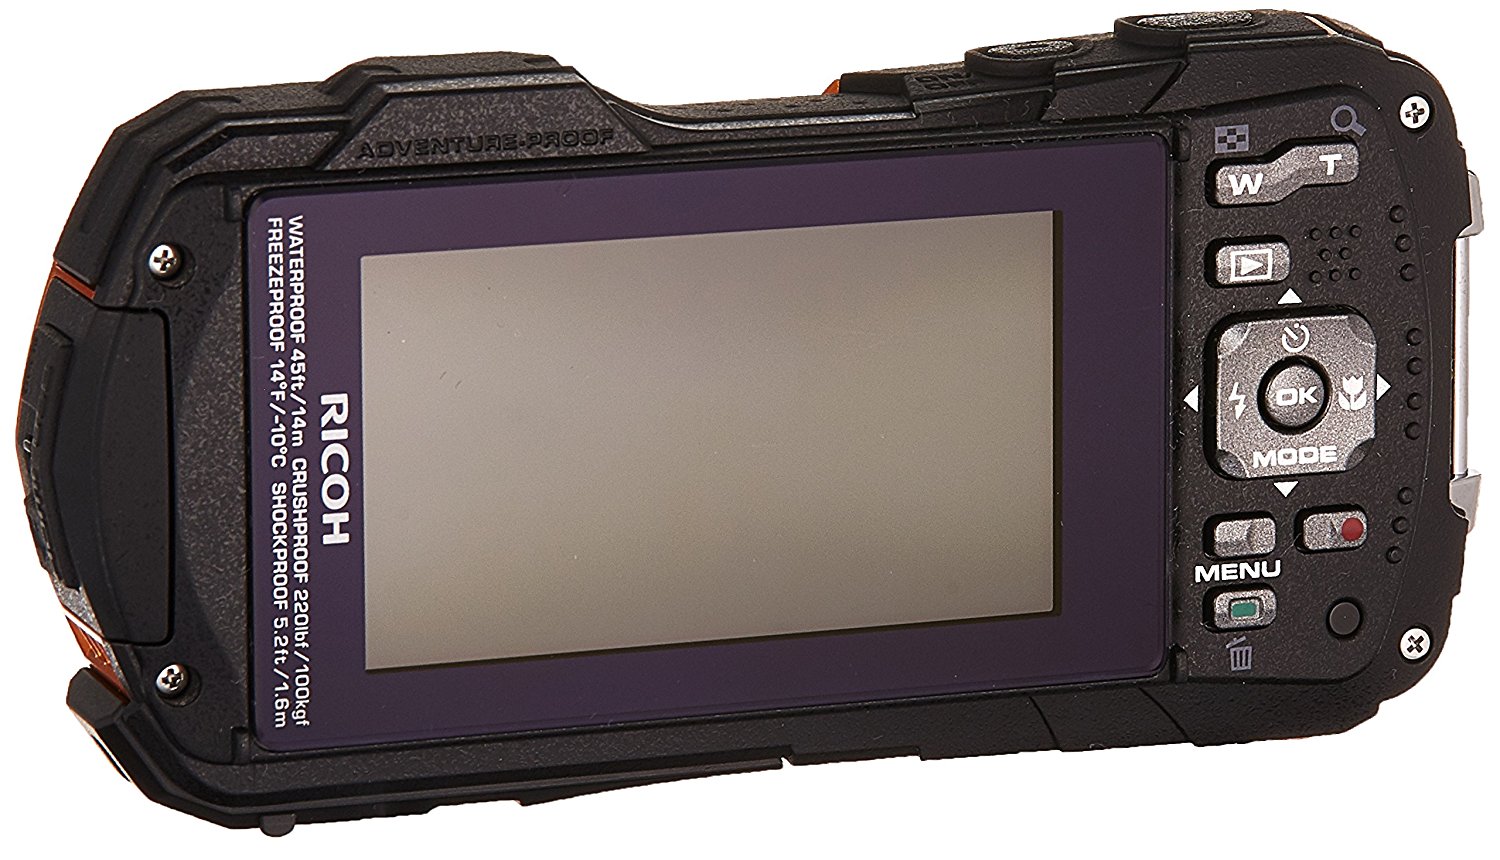 Ricoh-WG-50-Waterproof-Camera_Rear